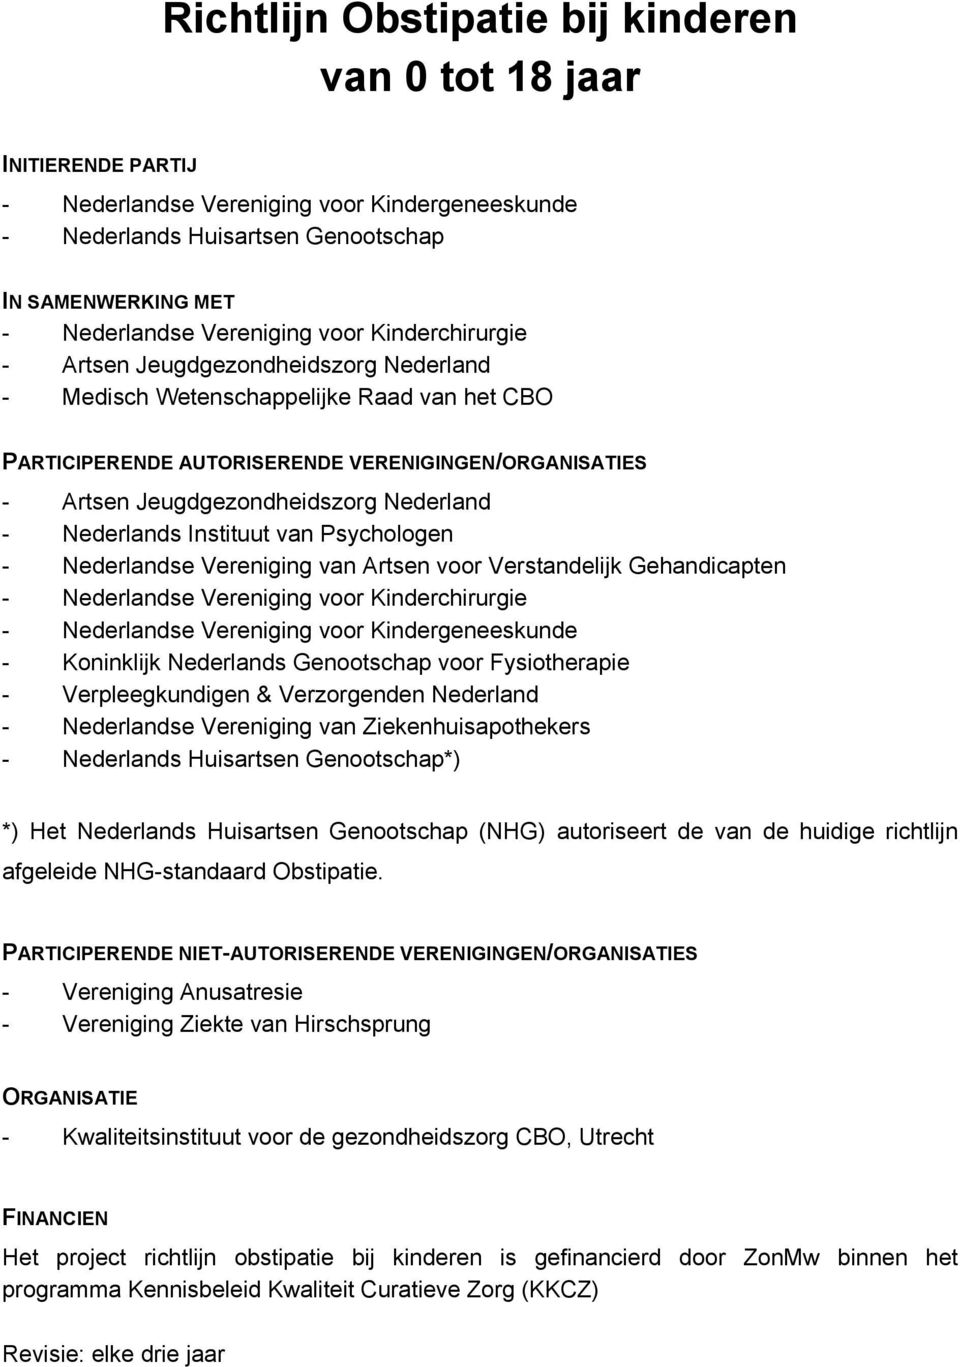 Nederland - Nederlands Instituut van Psychologen - Nederlandse Vereniging van Artsen voor Verstandelijk Gehandicapten - Nederlandse Vereniging voor Kinderchirurgie - Nederlandse Vereniging voor